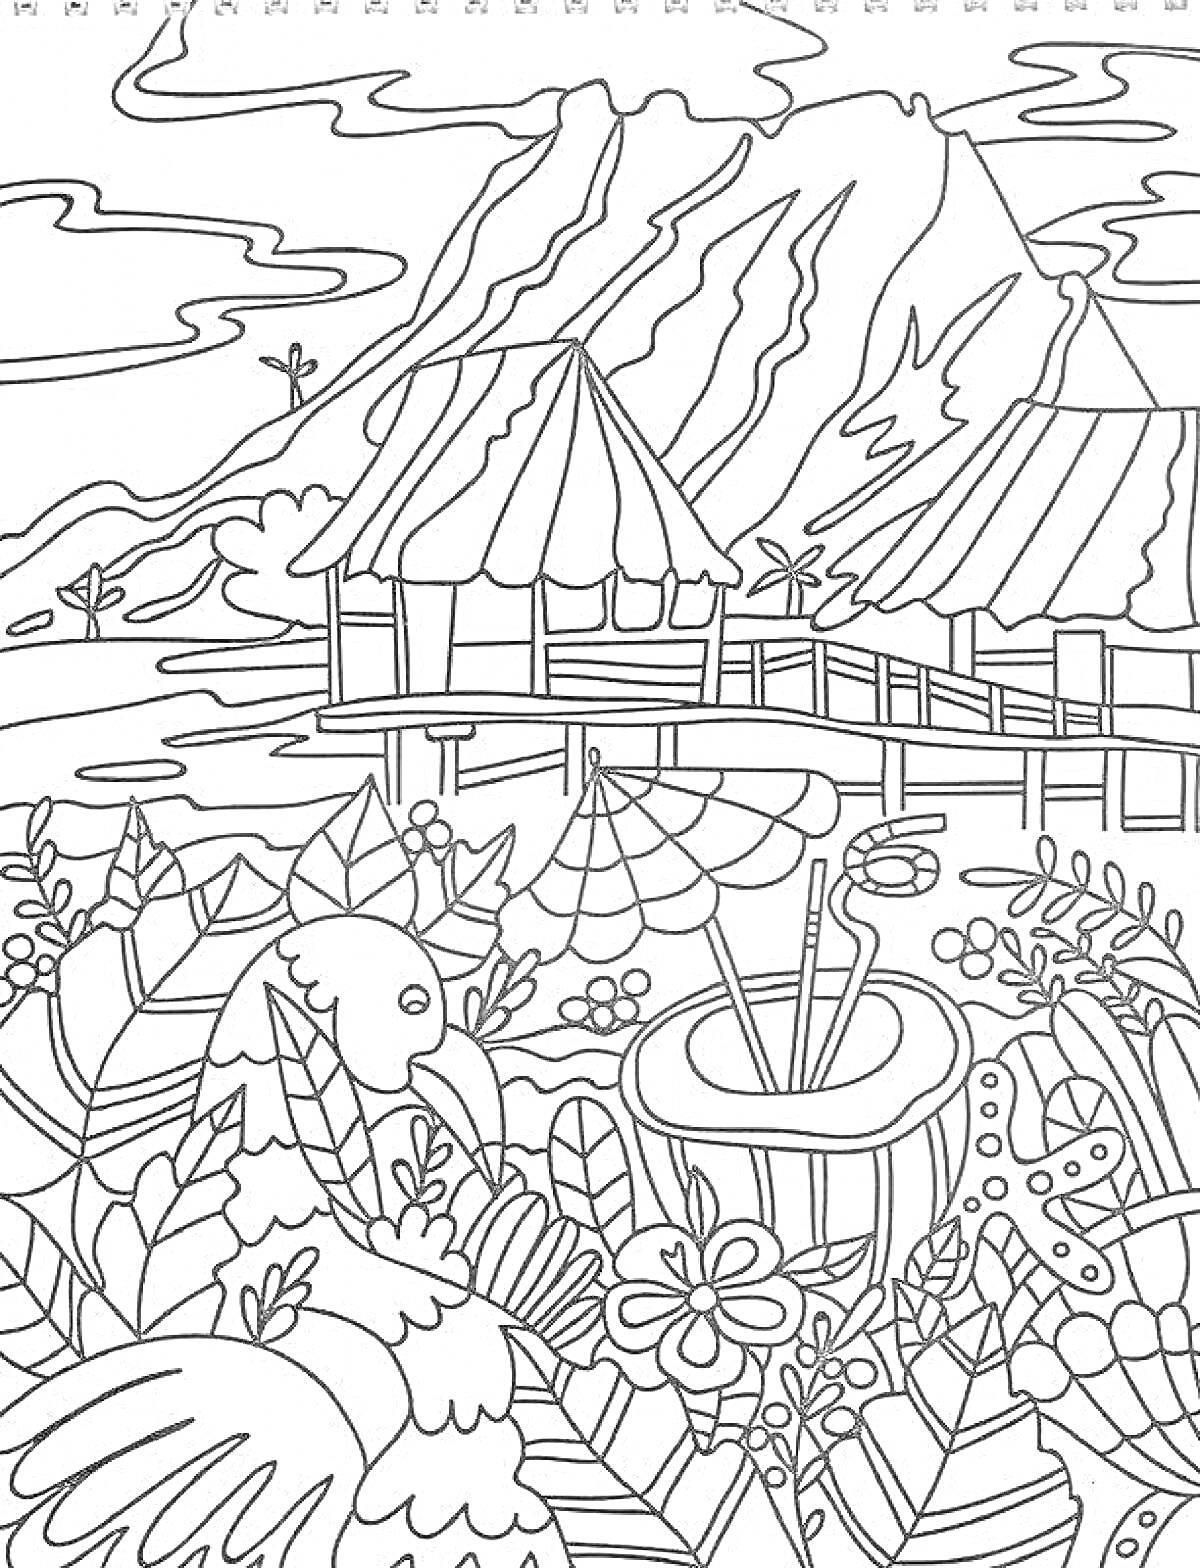 Раскраска Тропический рай: горы, домики на воде, тропическая растительность, попугай, пляжный напиток с зонтиком